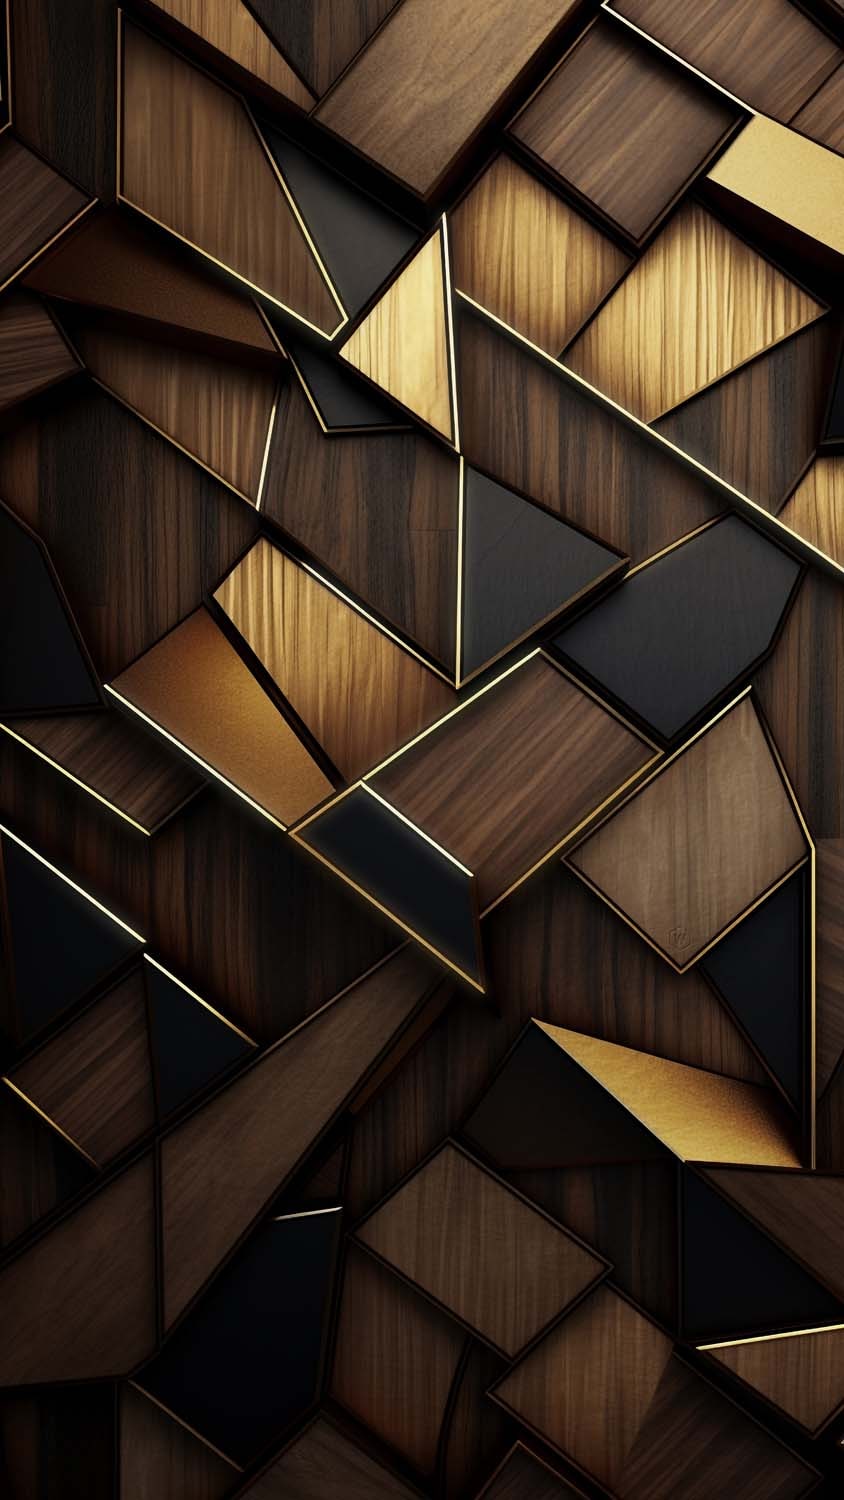 Wooden 3D Art iPhone Wallpaper 4K